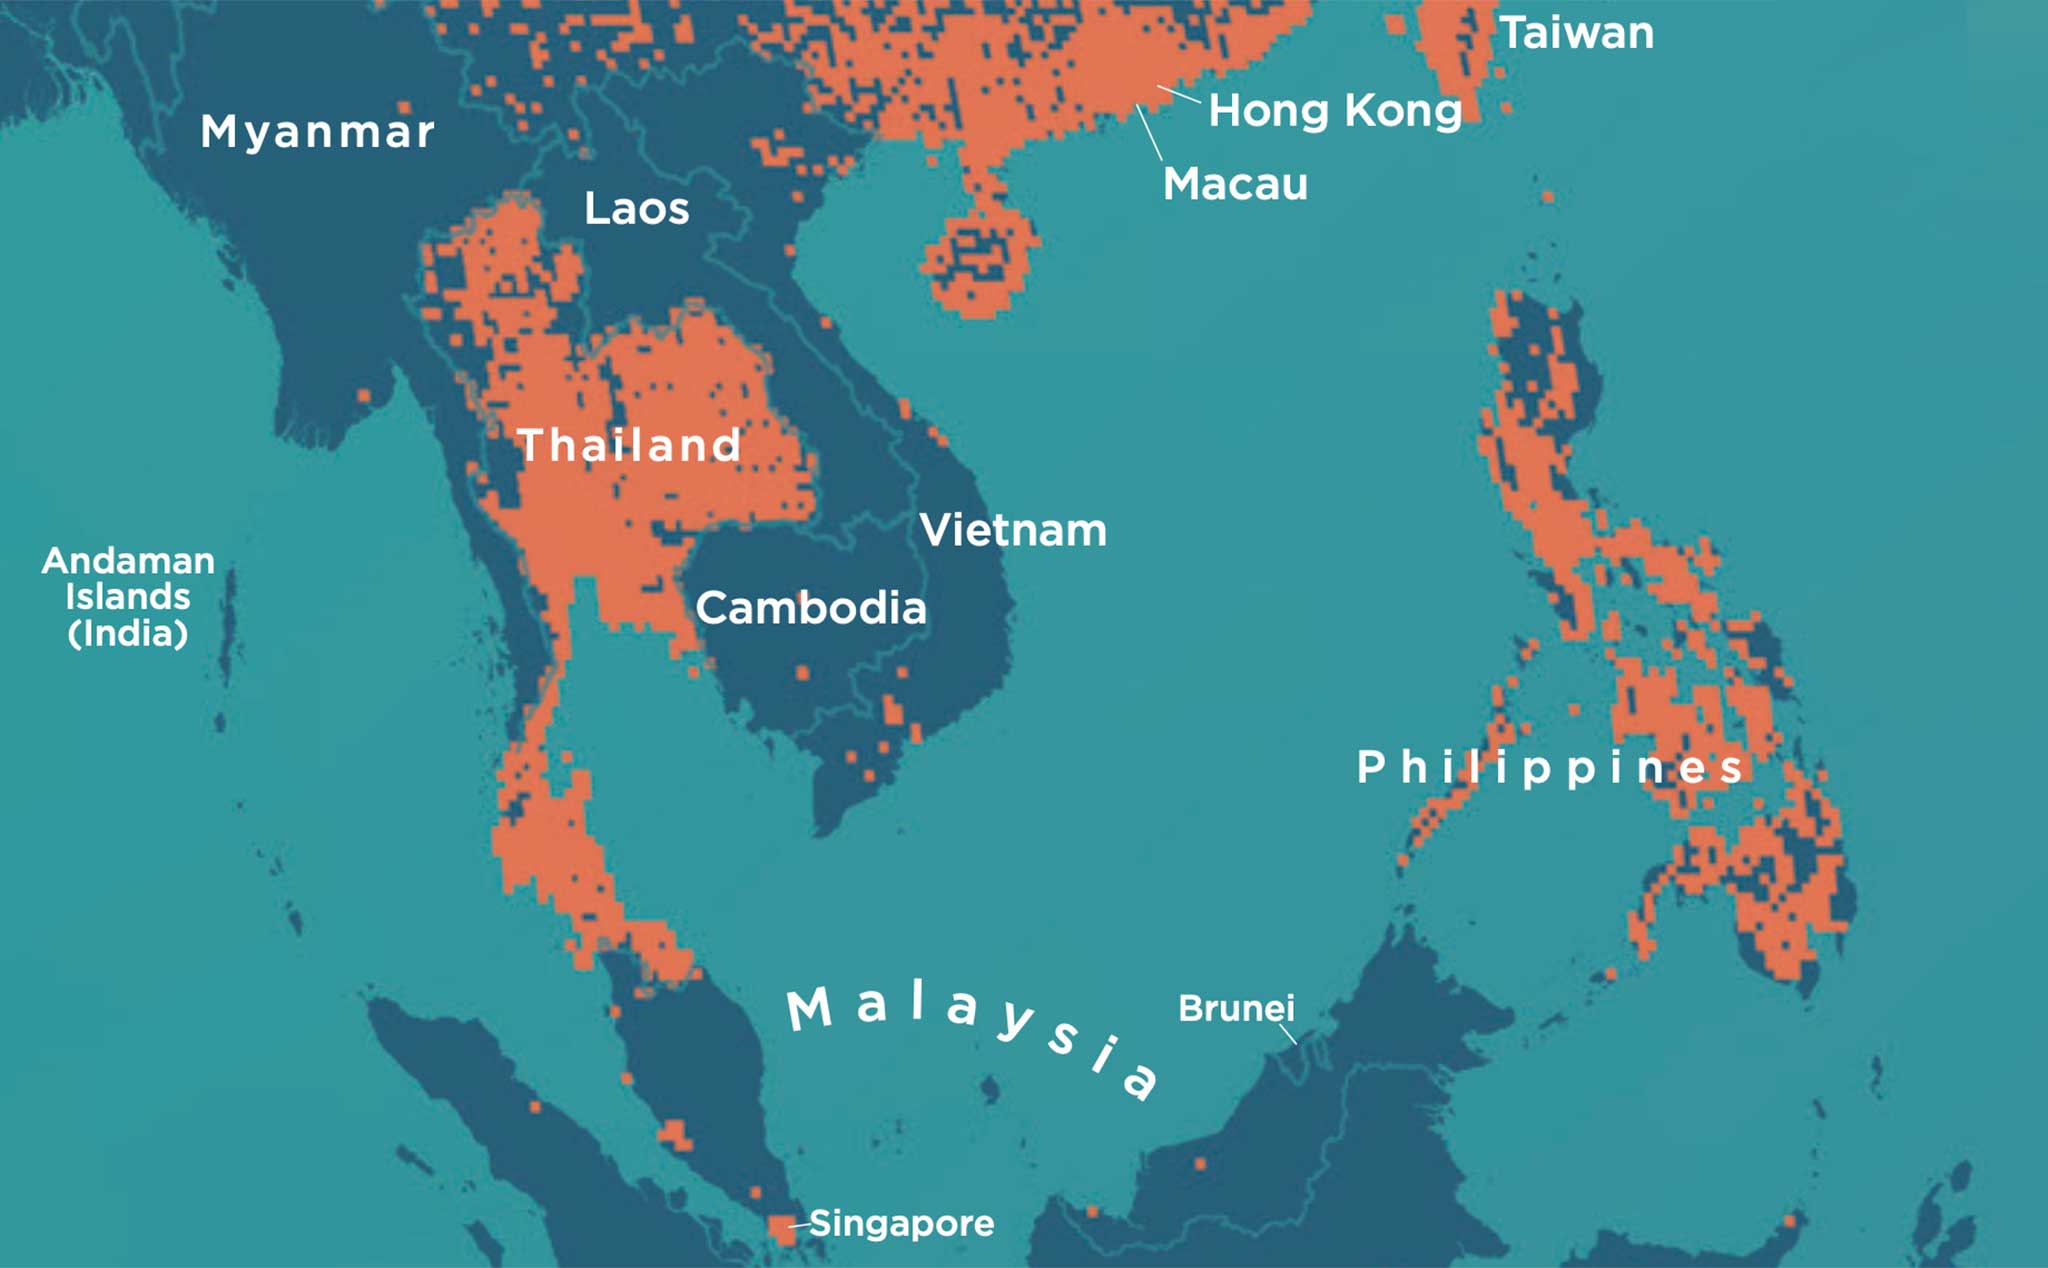 Bản đồ phủ sóng 5G tại Đông Nam Á cho thấy vùng đất này đã được phủ kín mạng internet siêu tốc. Với công nghệ này, mọi người có thể làm việc và giải trí một cách linh hoạt, không bị gián đoạn hay chậm trễ.